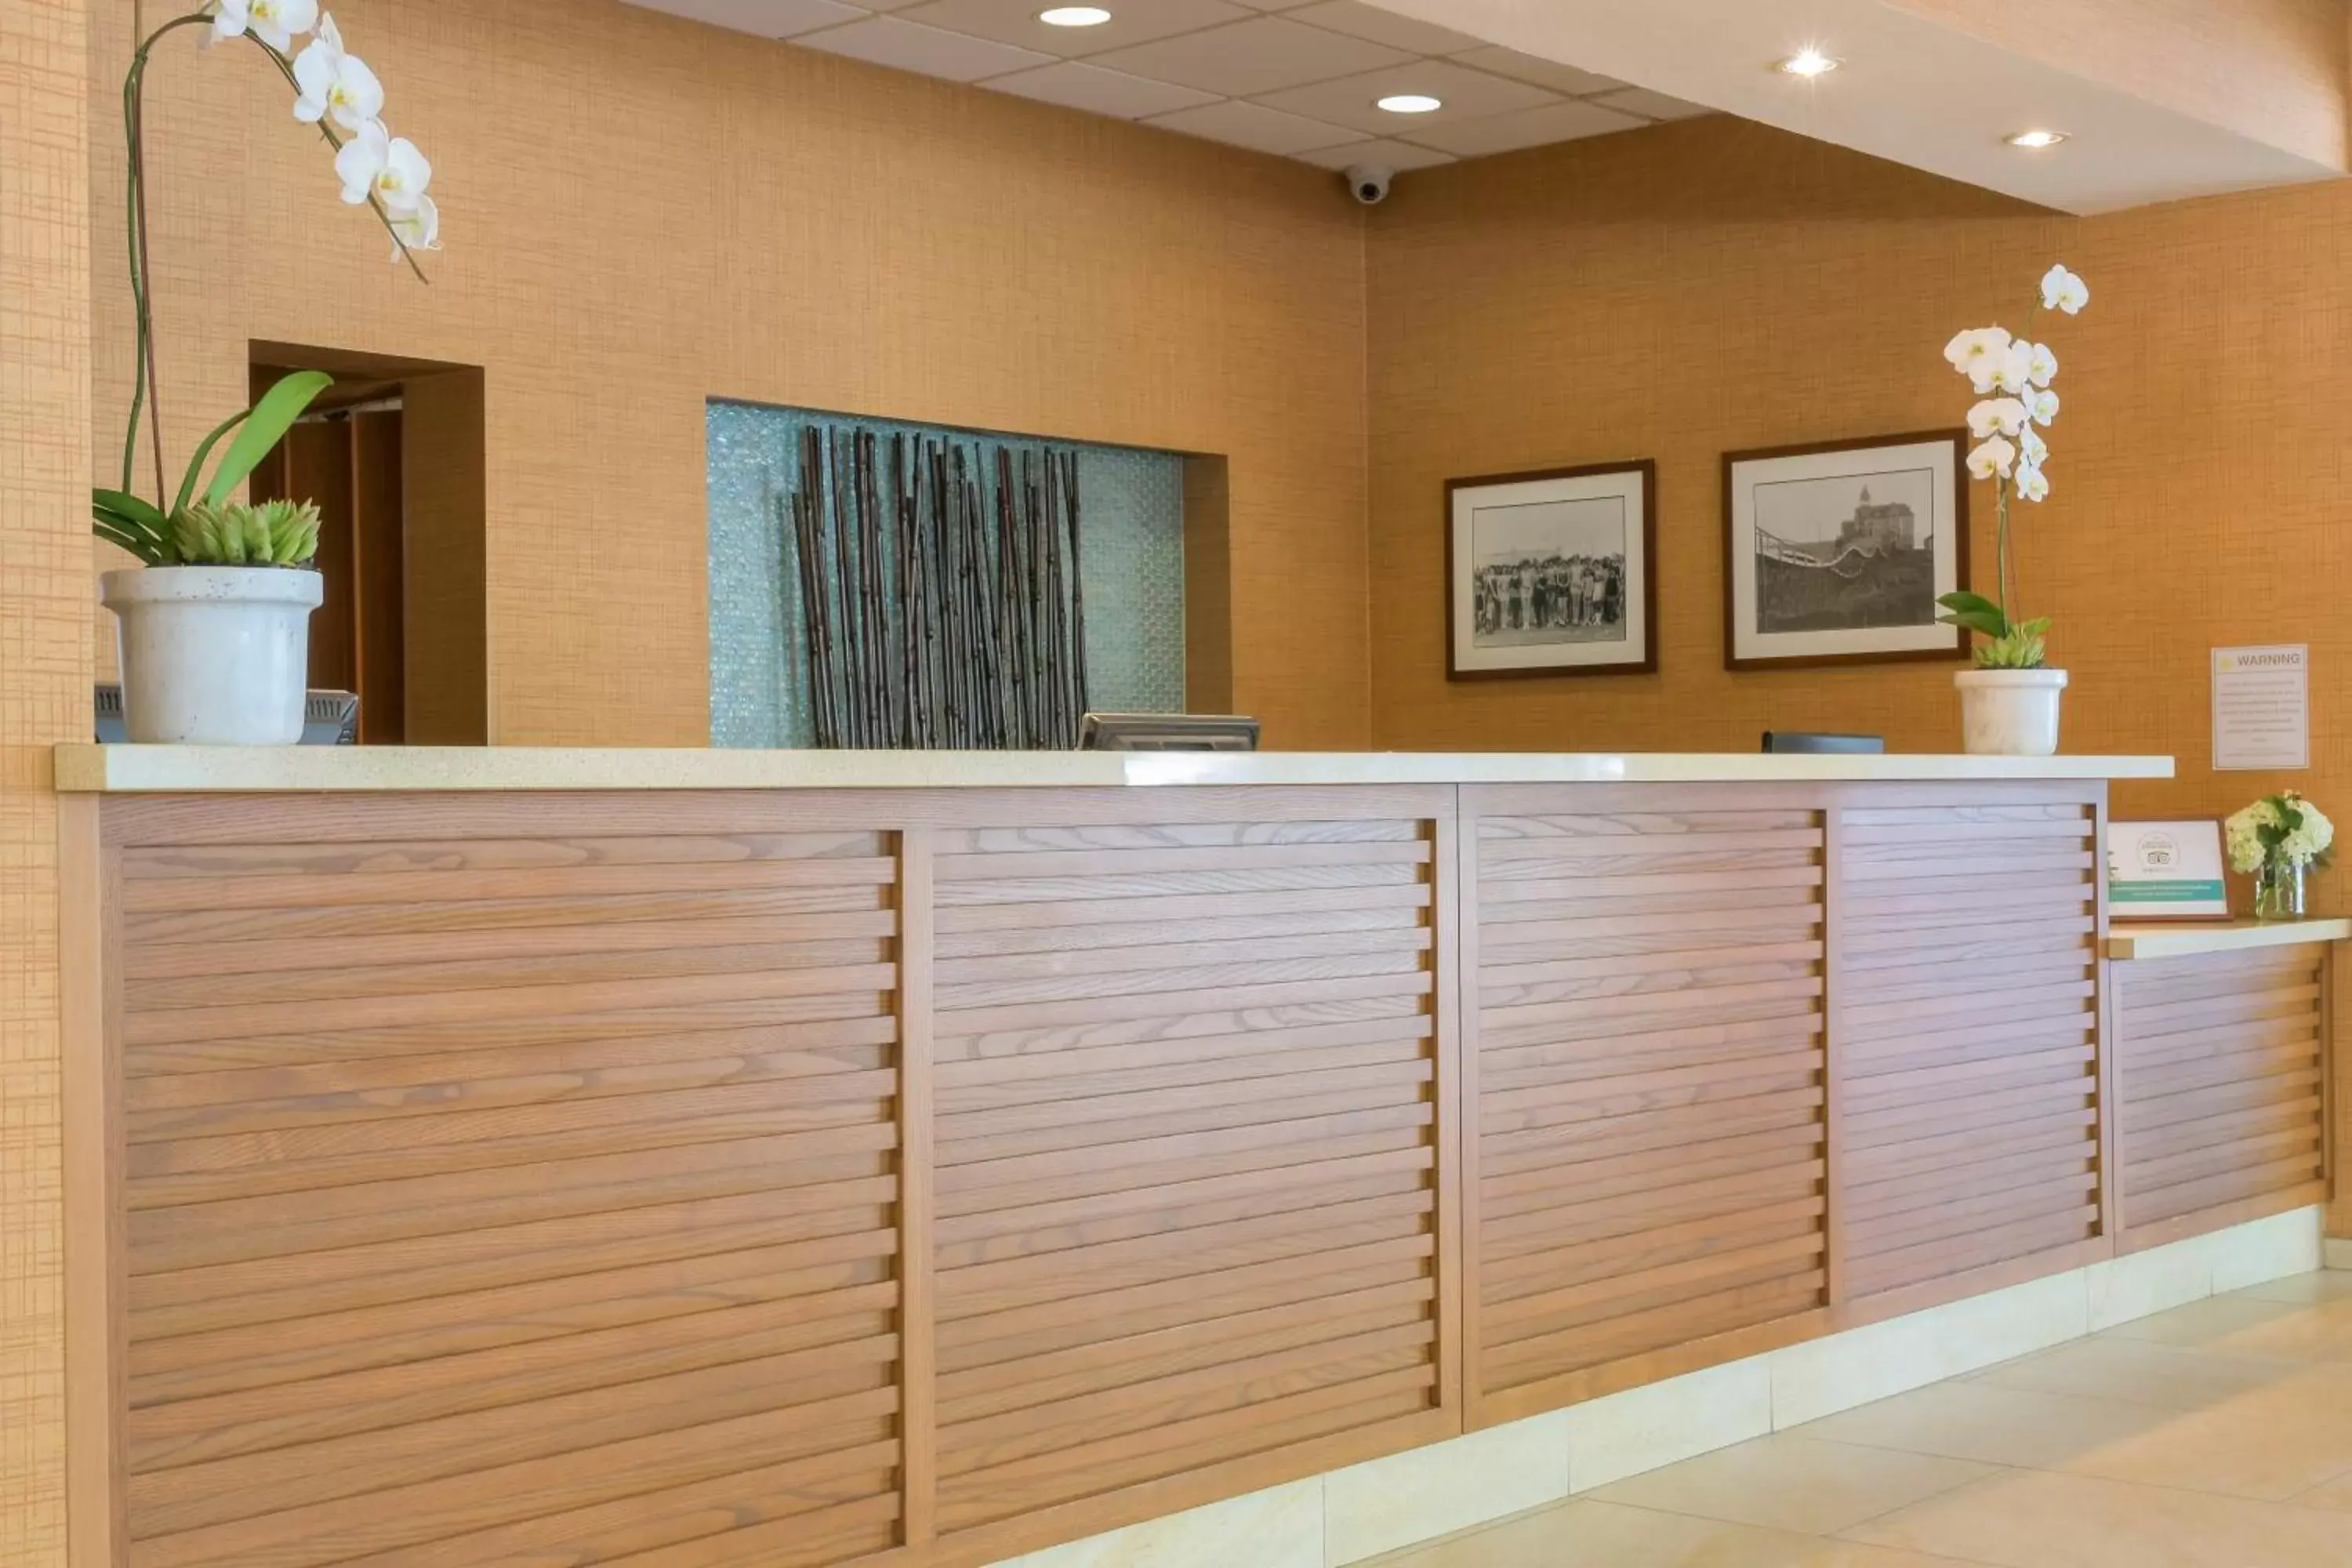 Lobby or reception, Lobby/Reception in Gateway Hotel Santa Monica